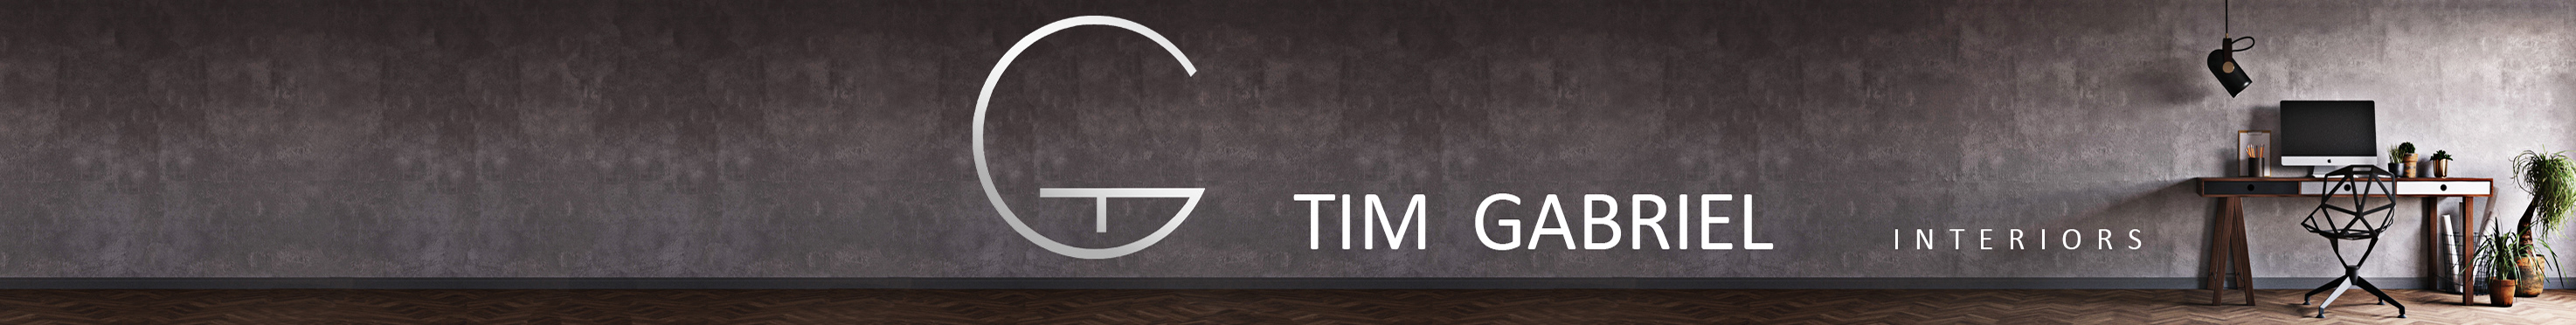 Tim Gabrielyan's profile banner